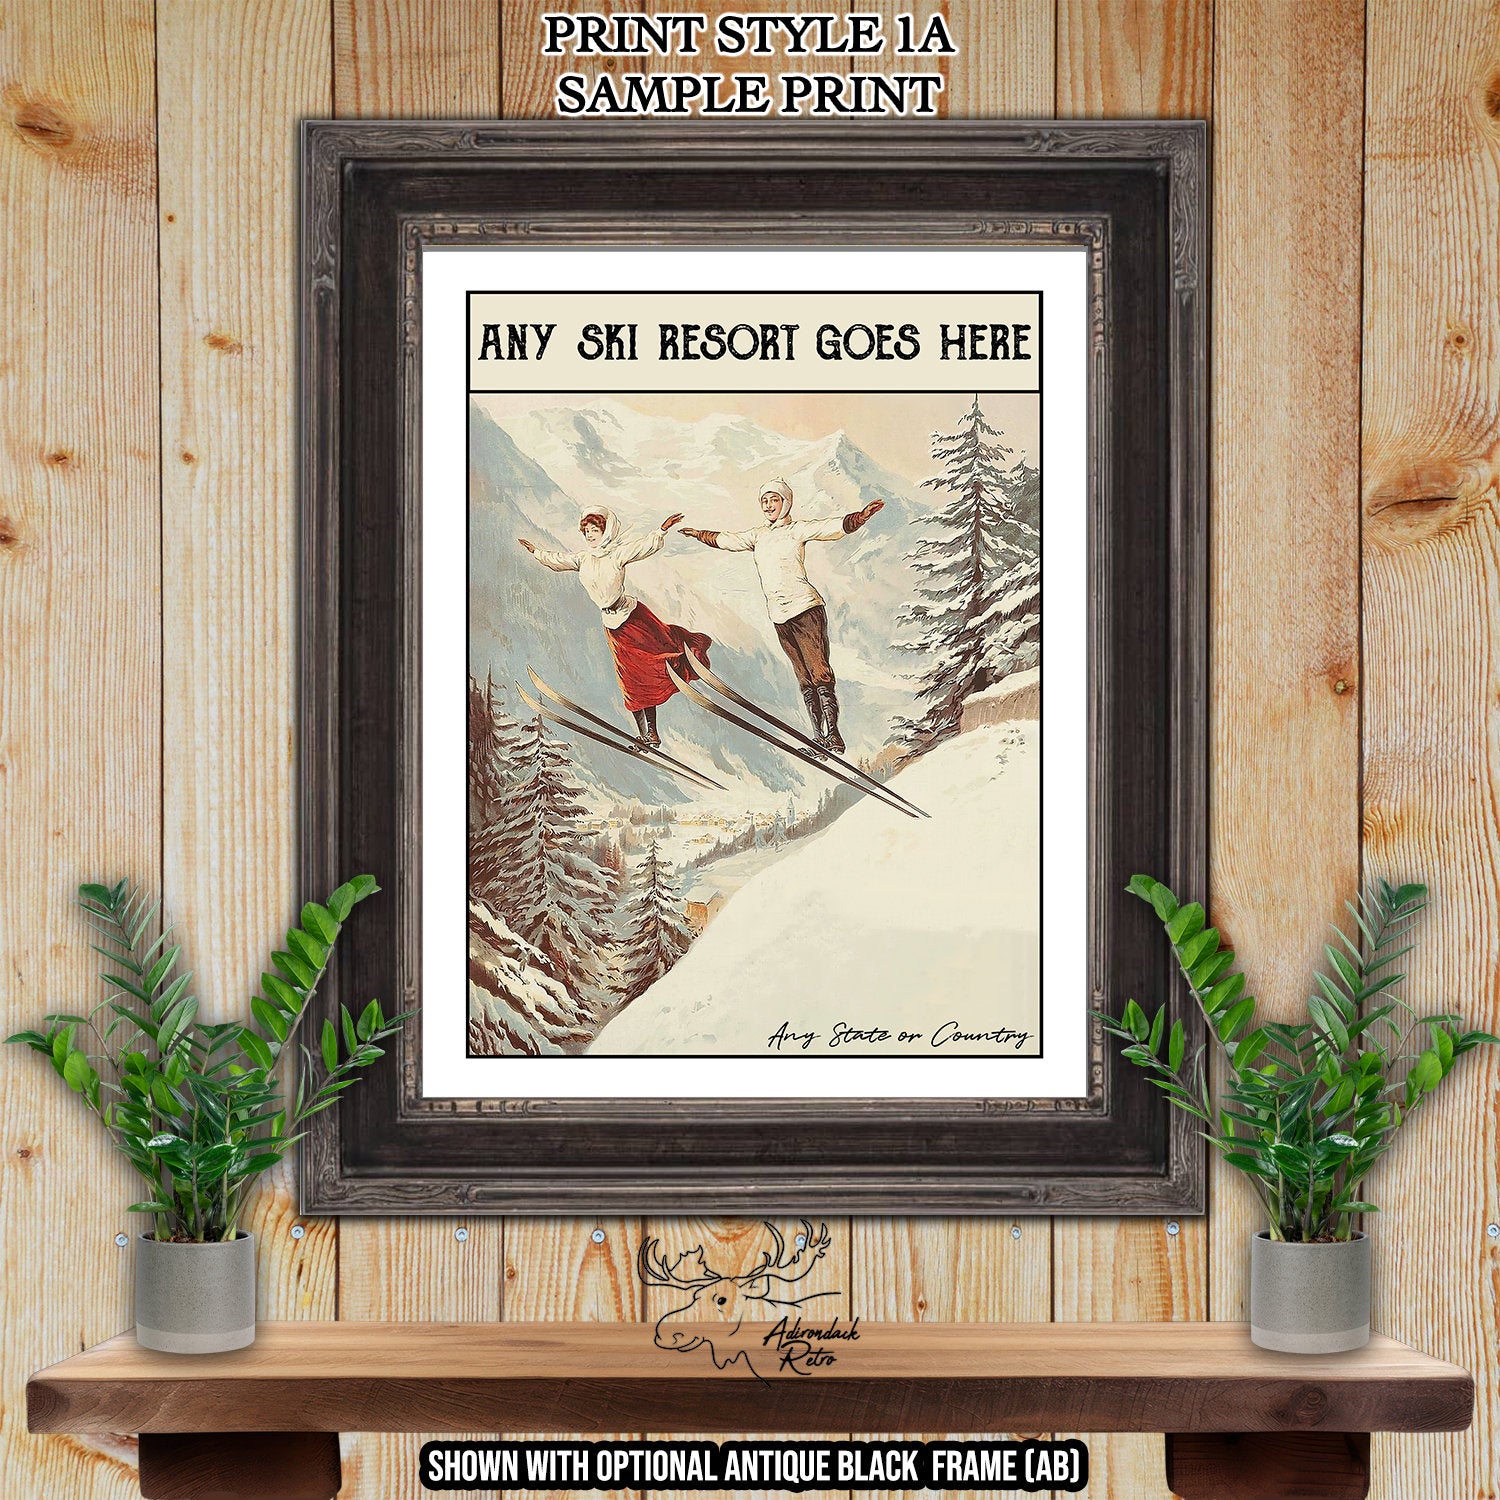 Oberjoch Germany Retro Ski Resort Print - Ski Poster